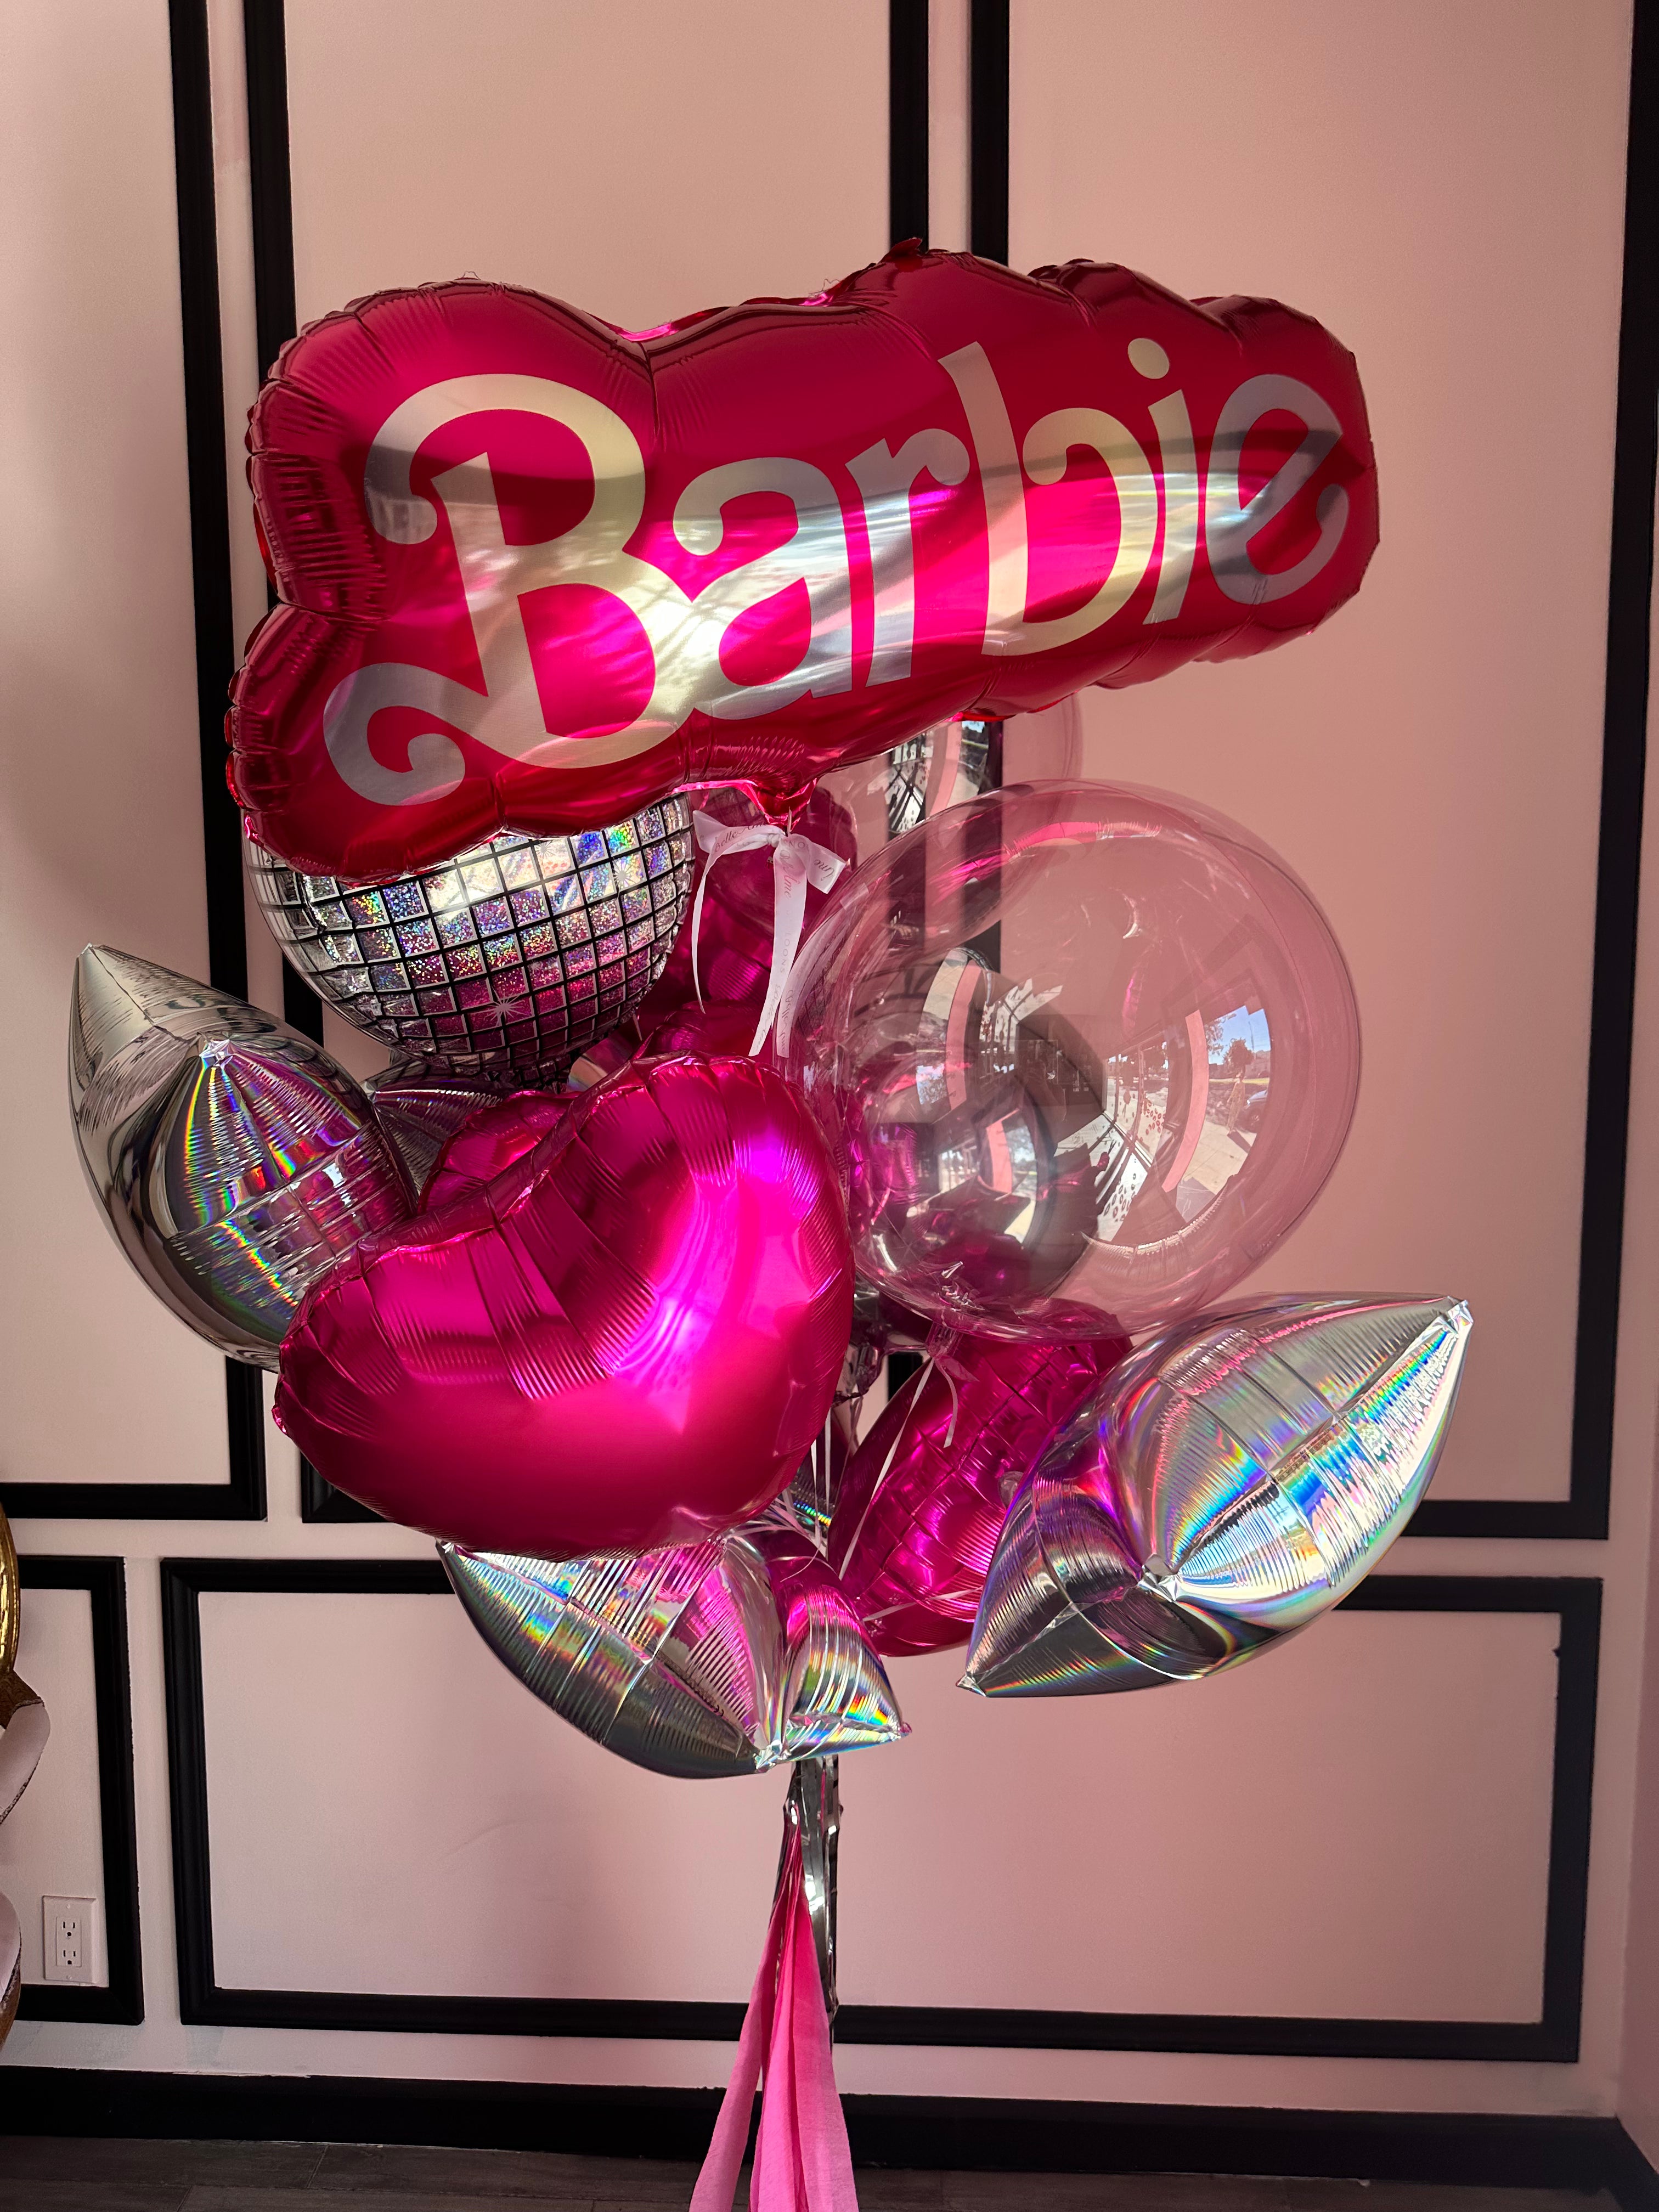 Aslin Balloons - 💕🌸 Barbie Balloons Bouquet personalizado para celebrar  la vida de una dama. 🌸💕 Aslin Balloons 🎈¡¡Demuestra tú amor y celébralo  con globos!! #barbie #BarbieTheMovie #balloongarland #balloonsdecor  #balloonsdecoration